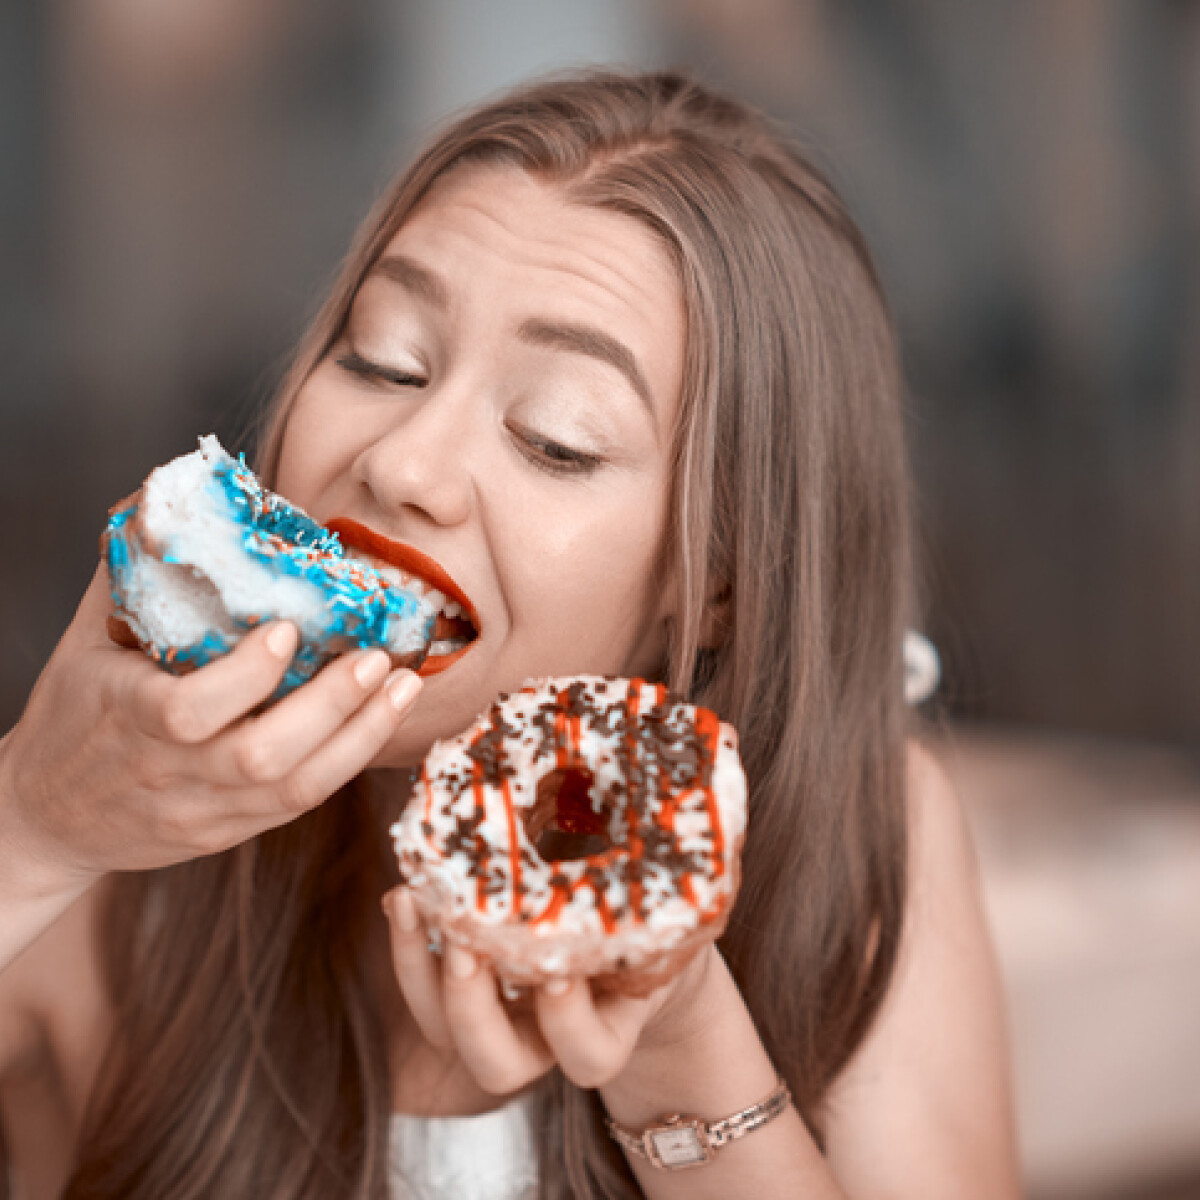 6 tuti tipp arra az esetre, ha folyton kívánod az édességet